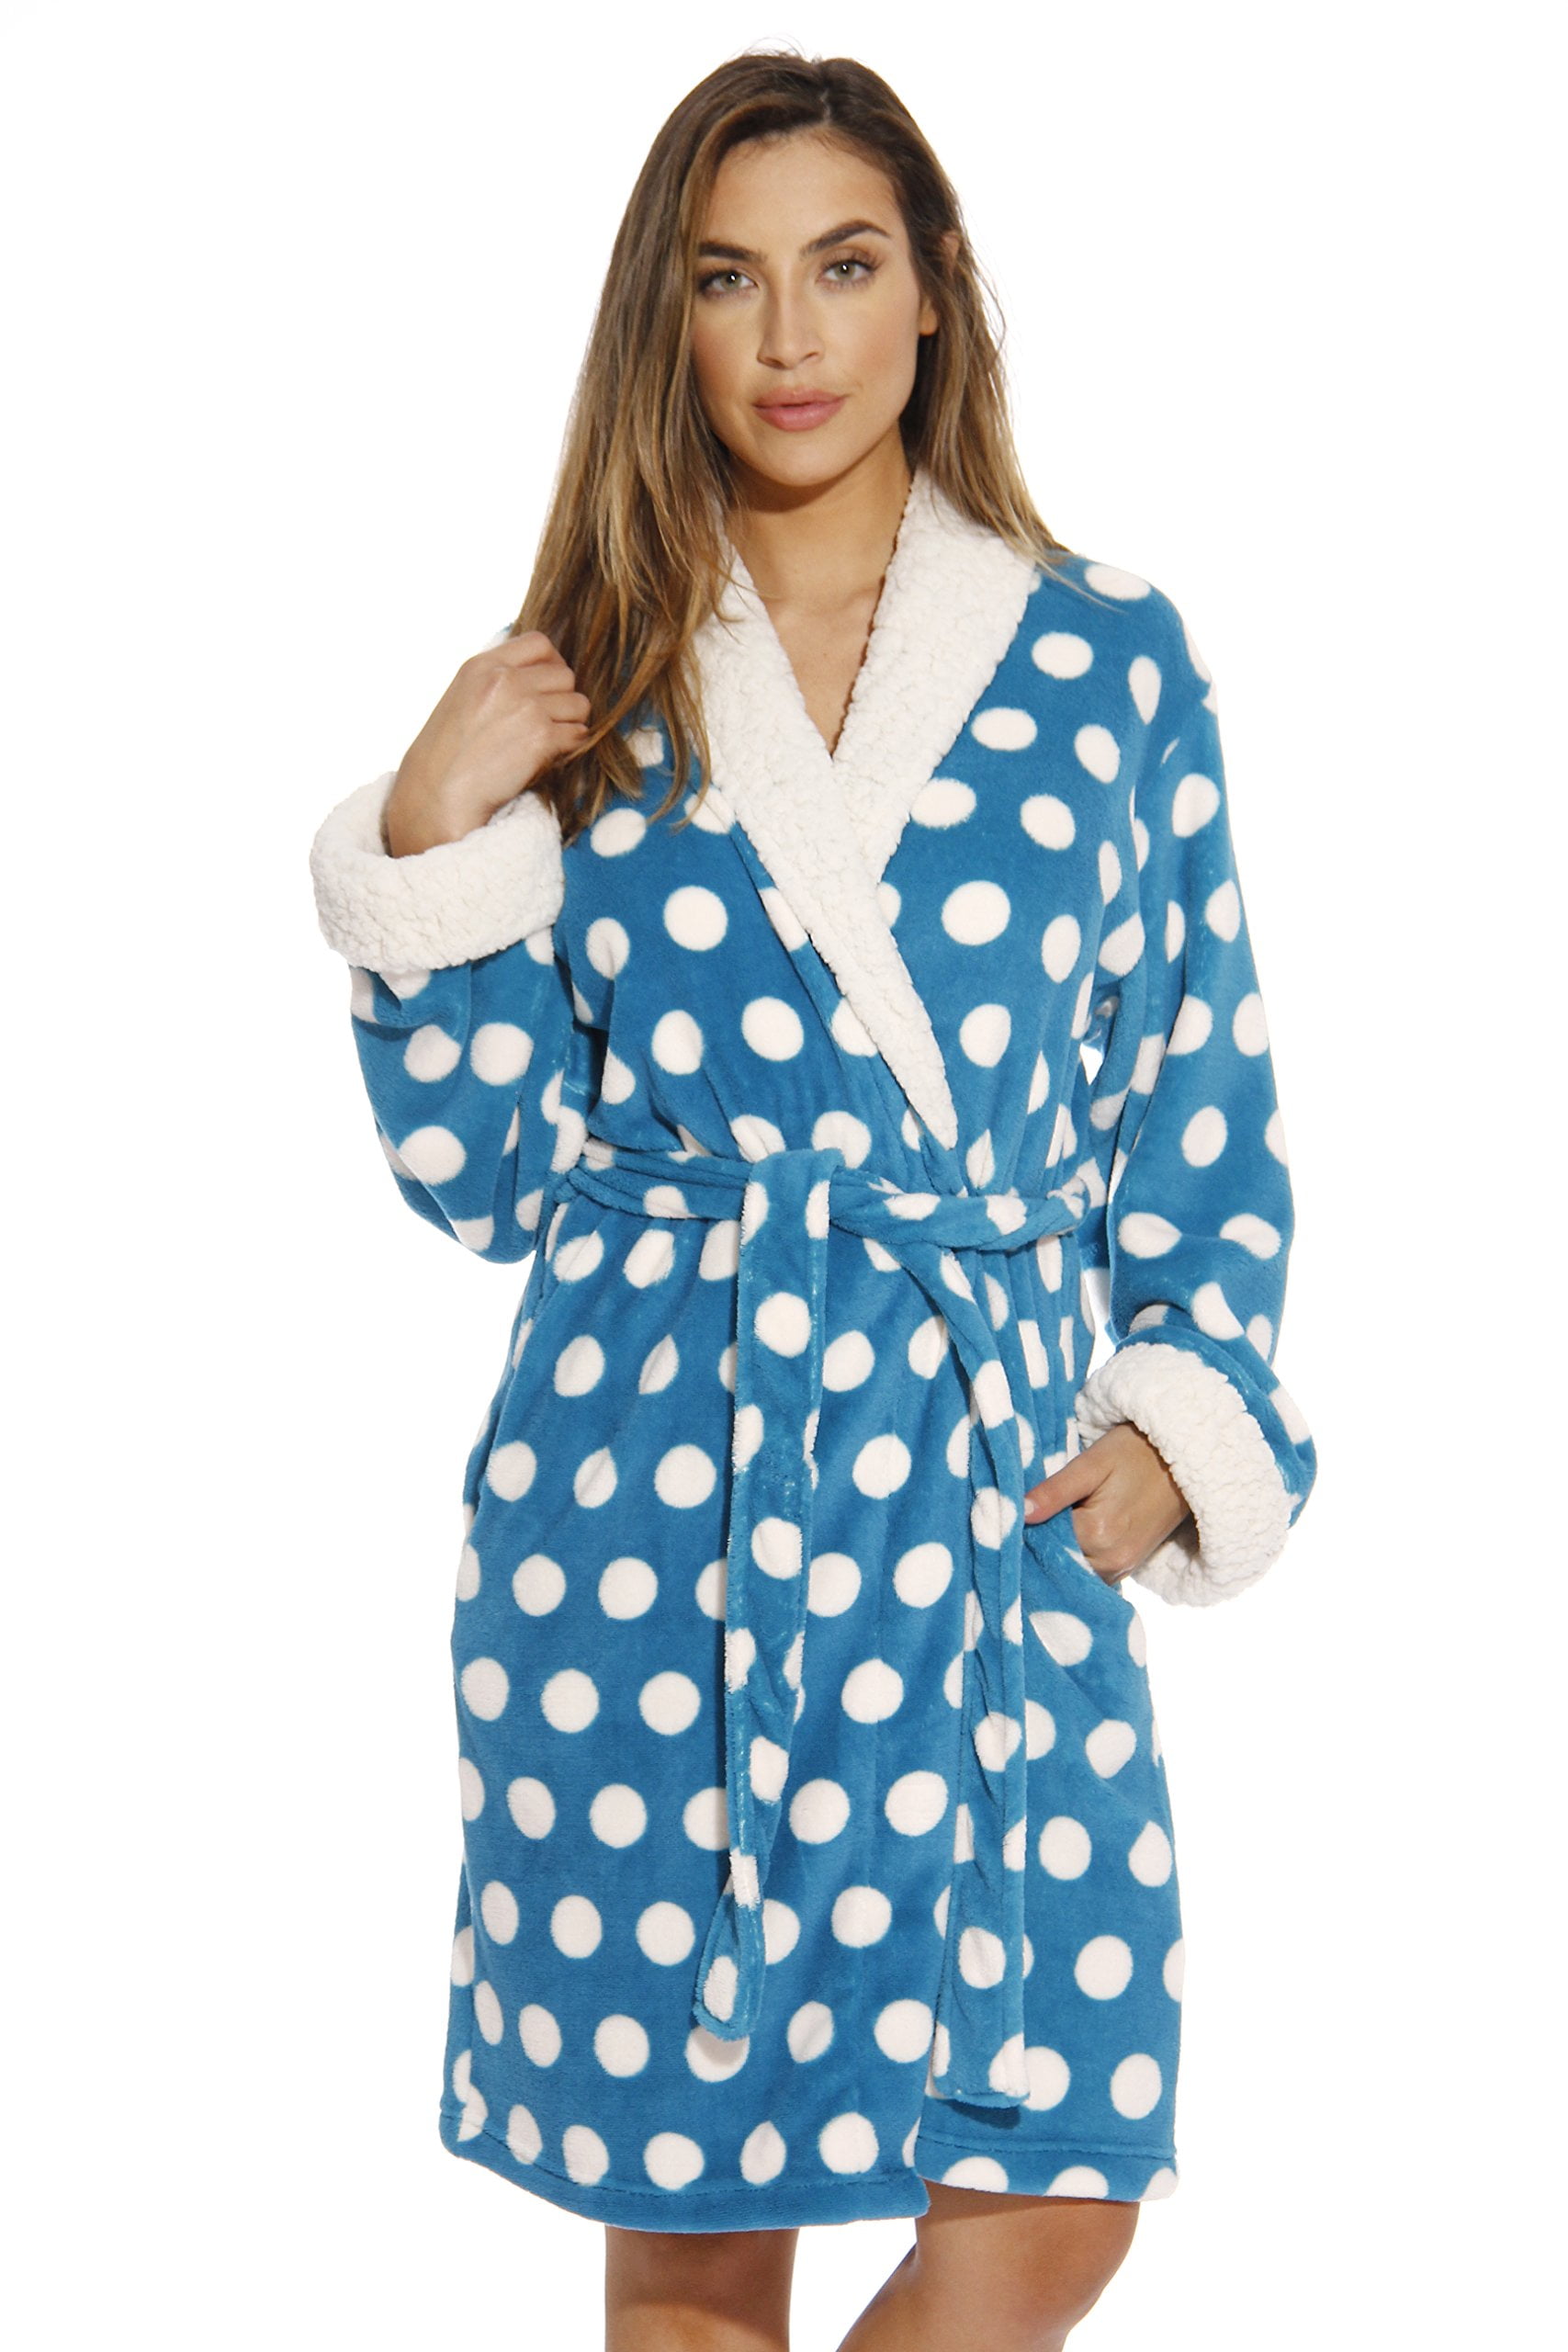 Polka Dot Kimono Robe / Bath Robes for Women (Turquoise, X-Small ...